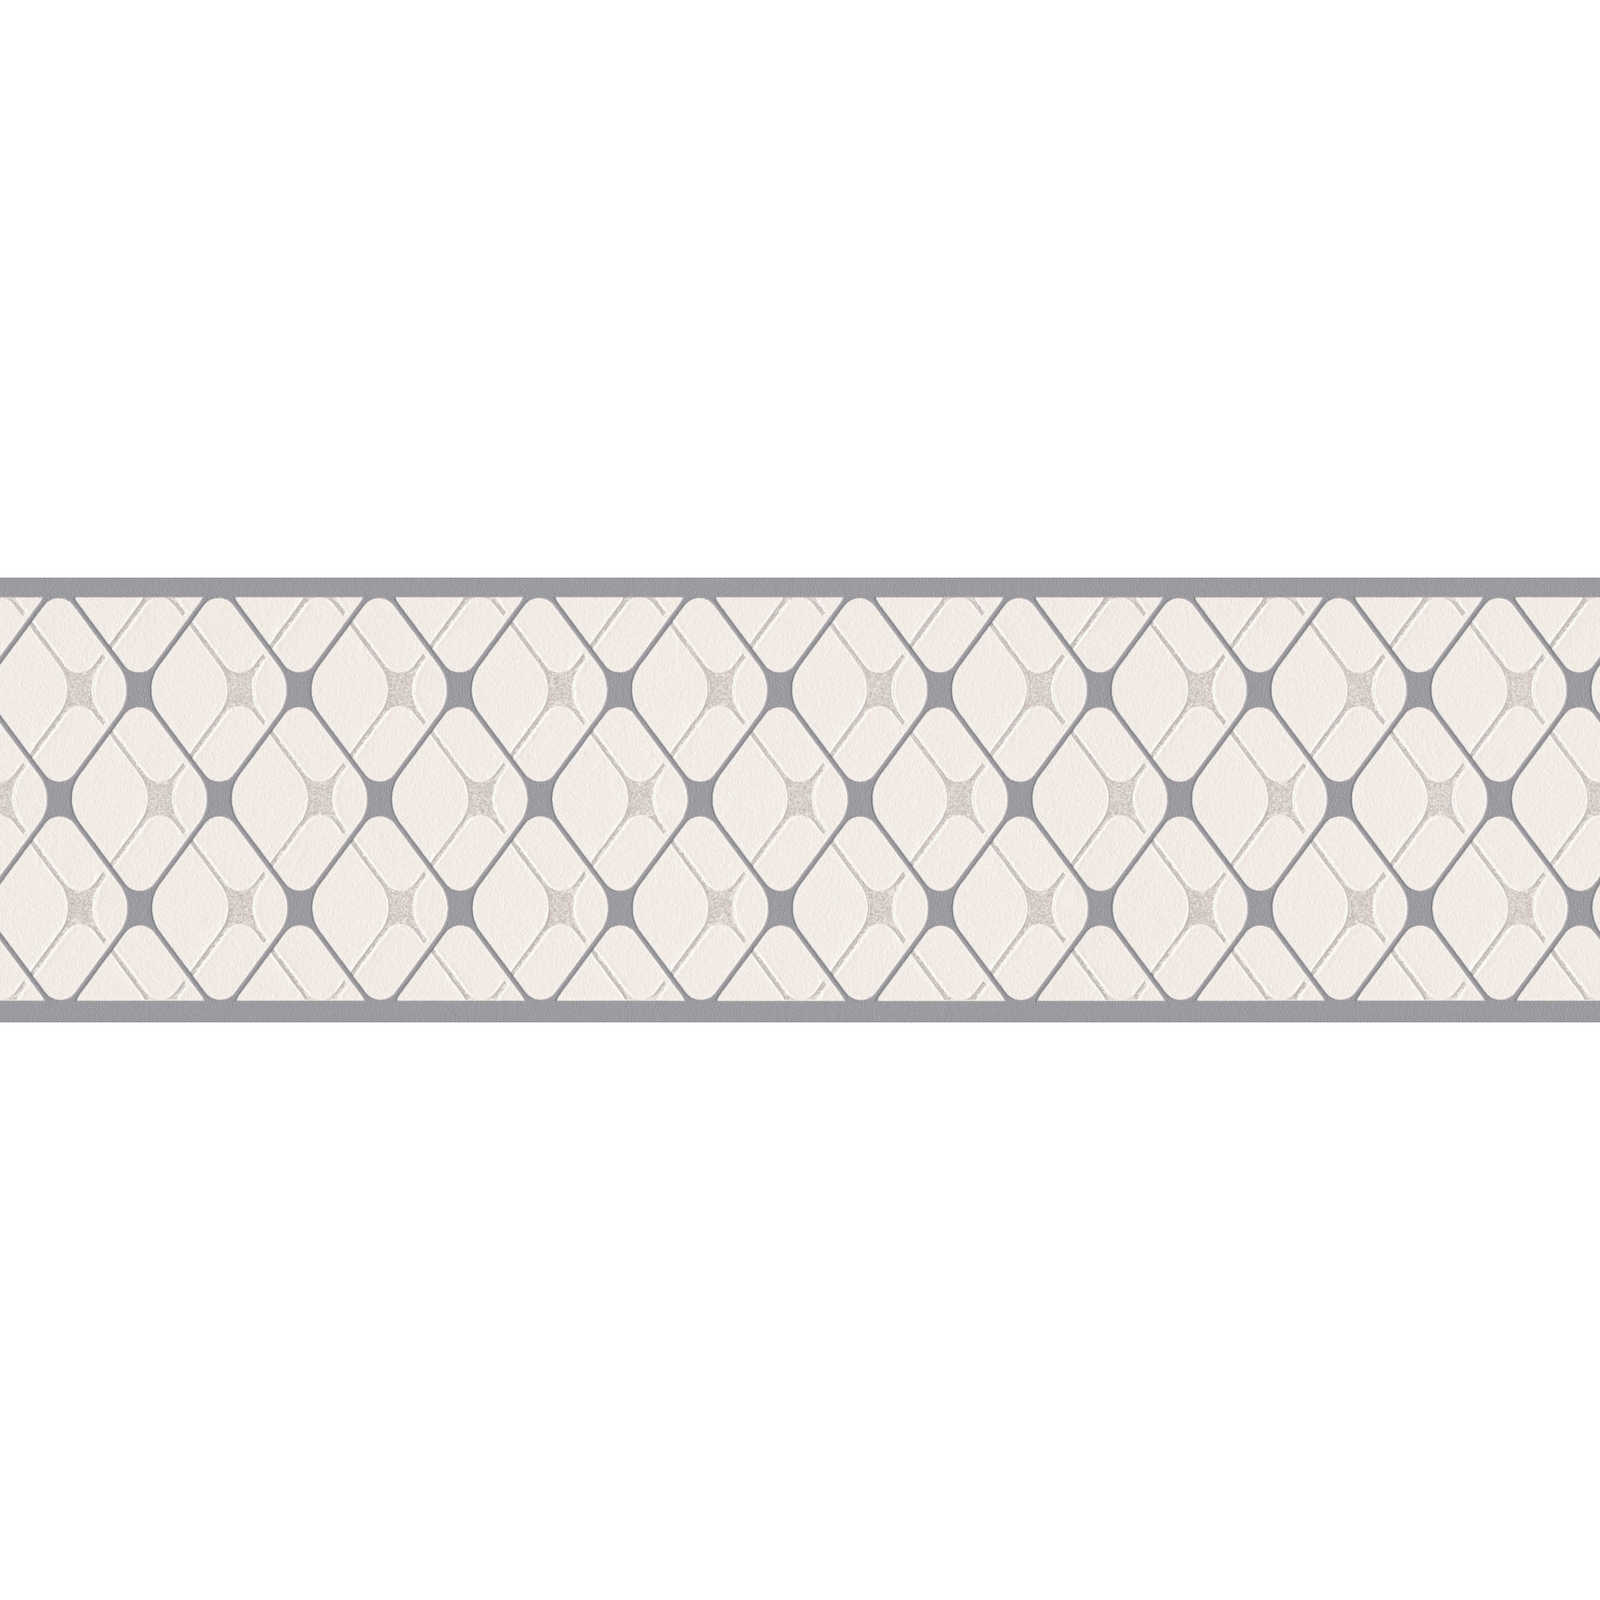         Selbstklebende Tapetenborte mit Rautenmuster – Grau, Weiß
    